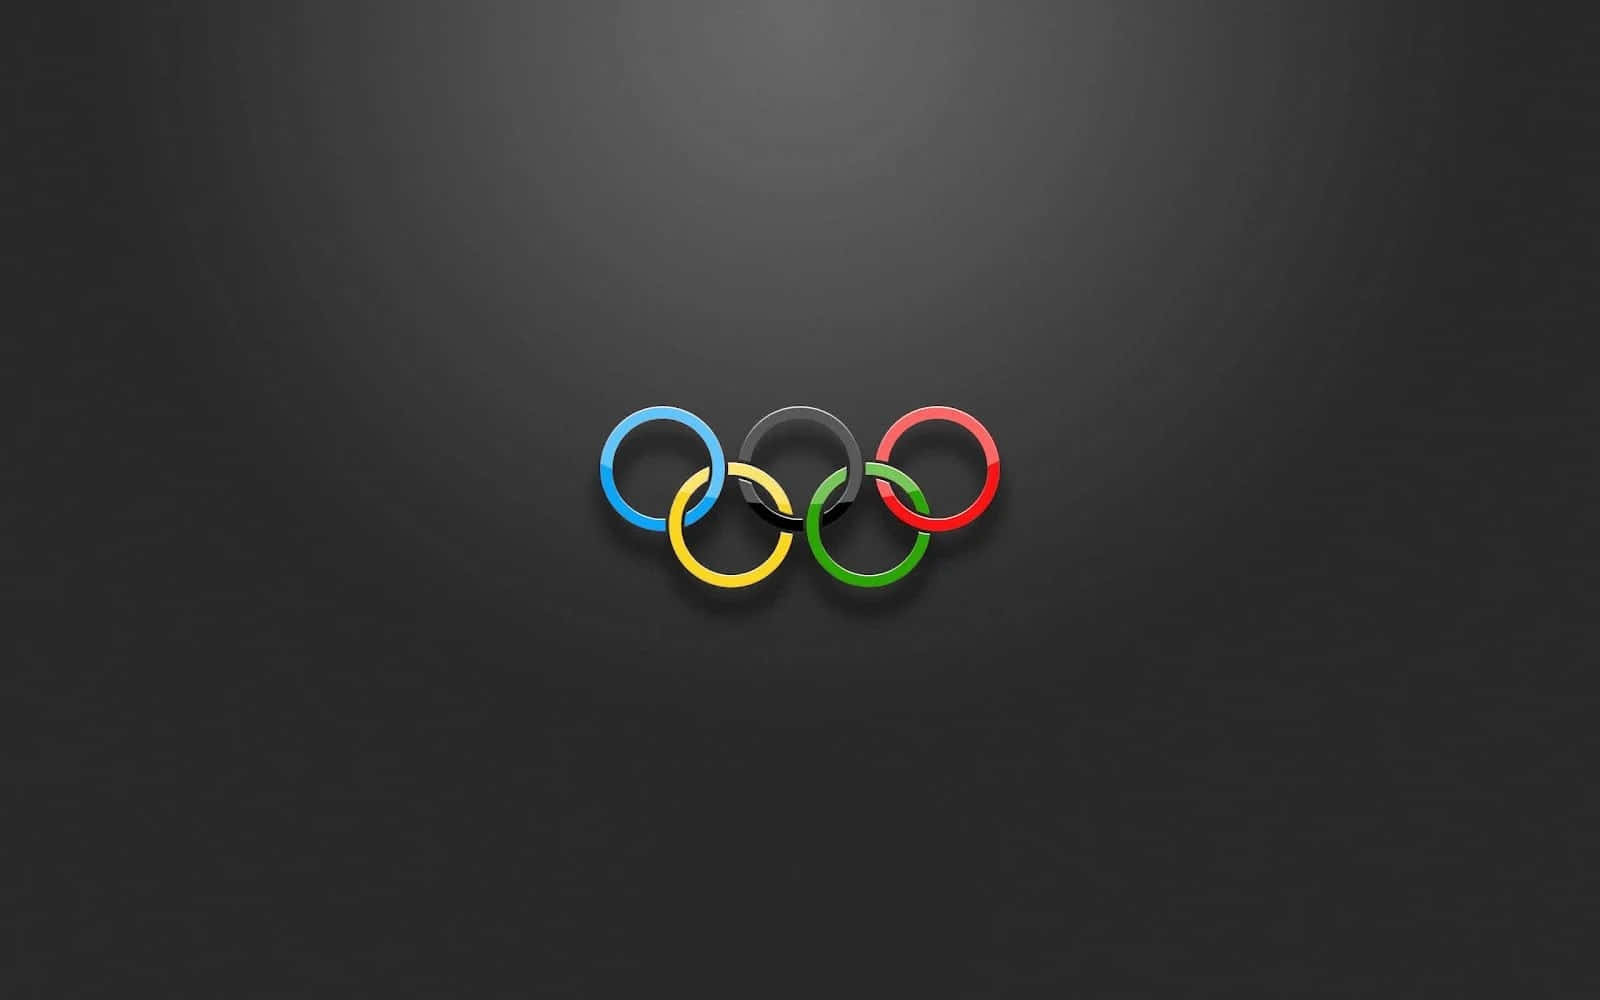 Olympischeringe Hintergrundbild In Hd